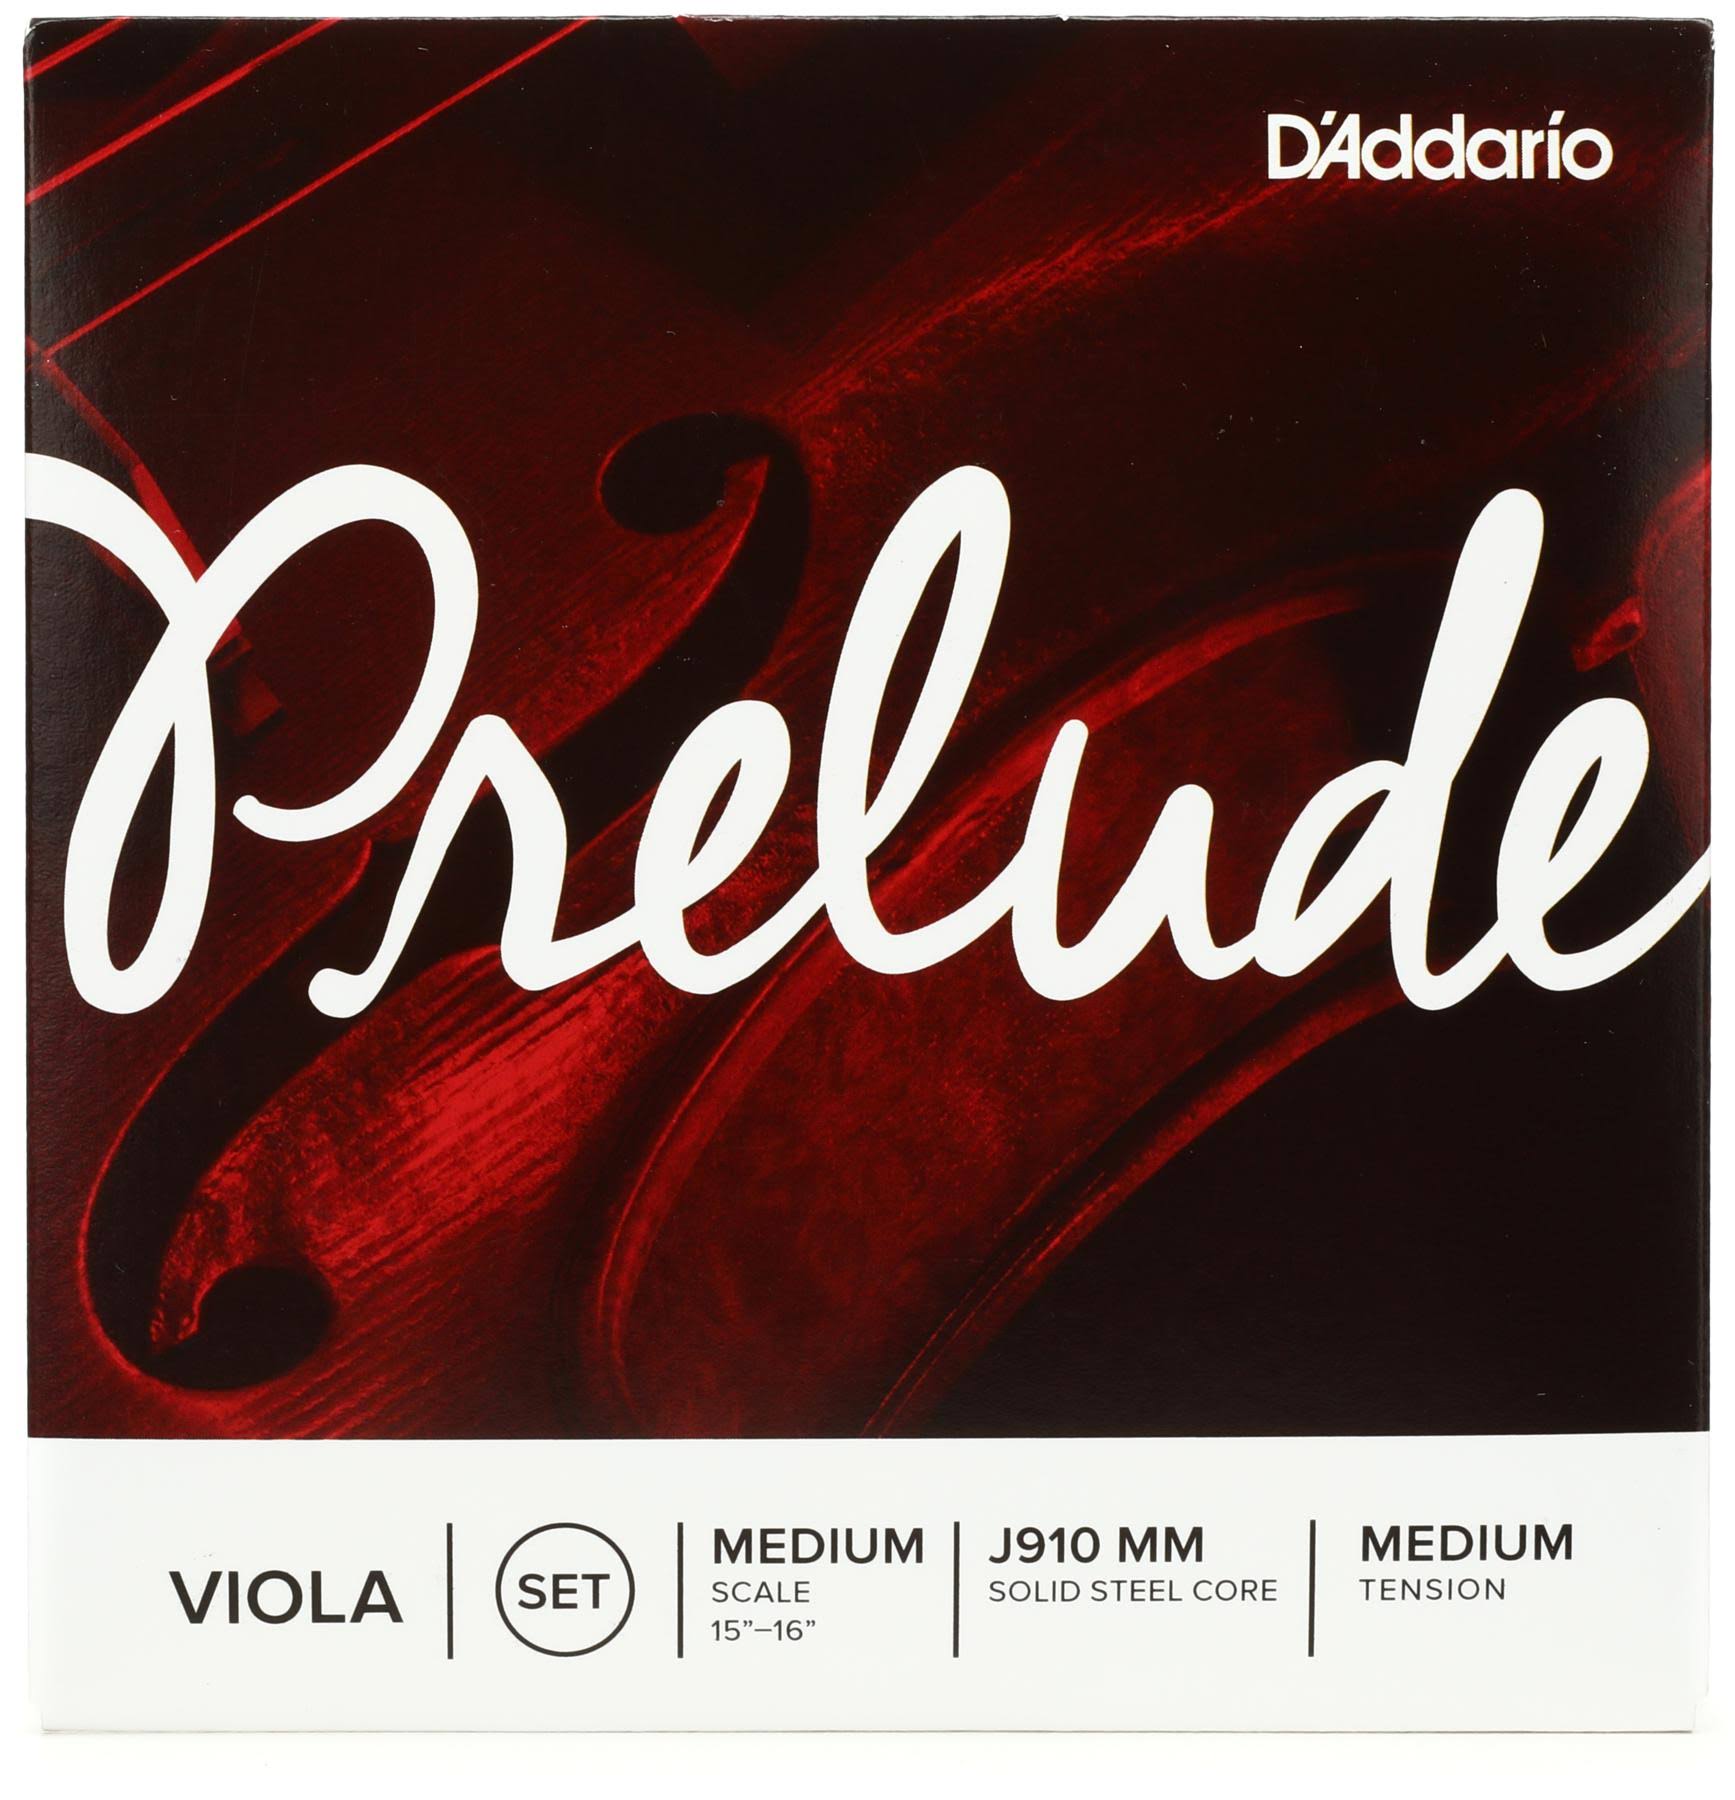 D'Addario Prelude Viola String Set - Medium Tension